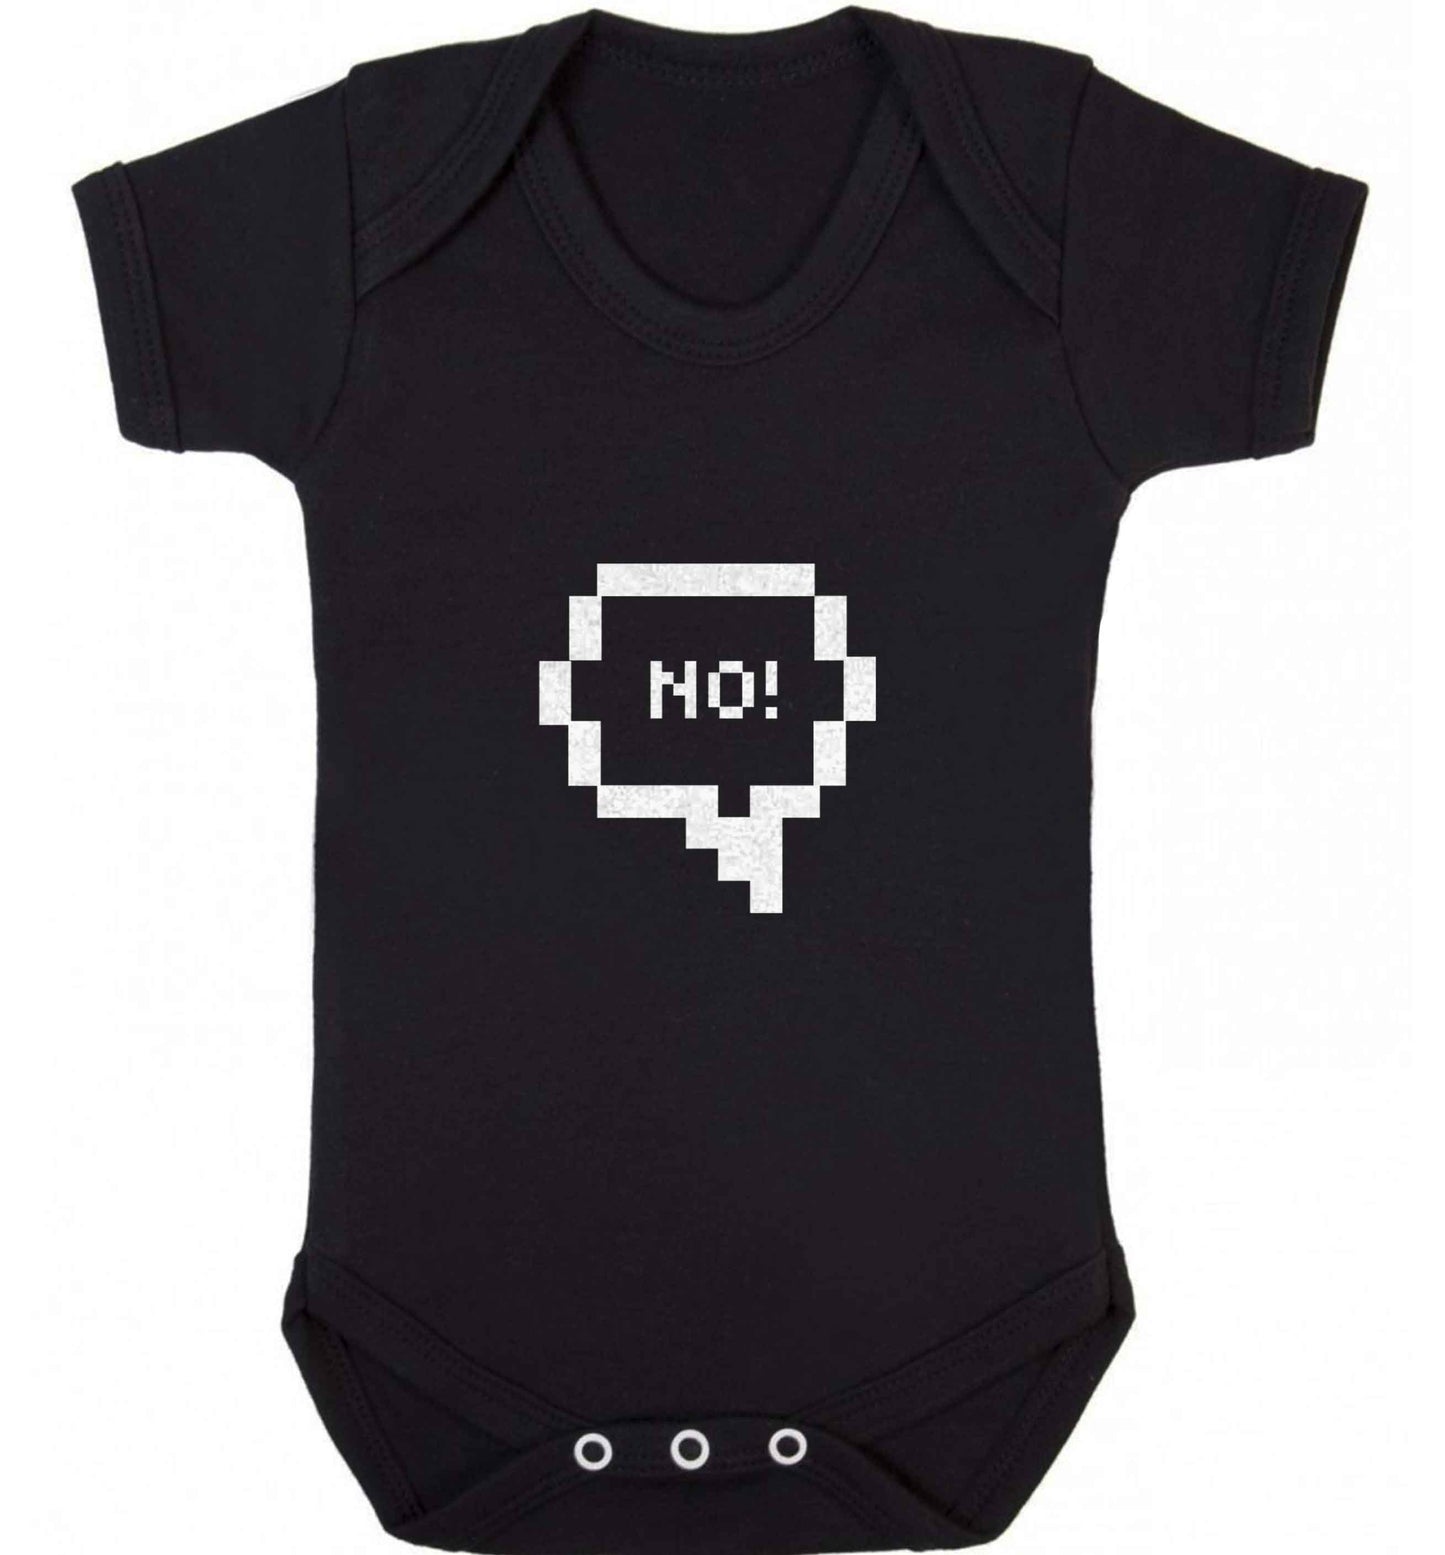 No baby vest black 18-24 months